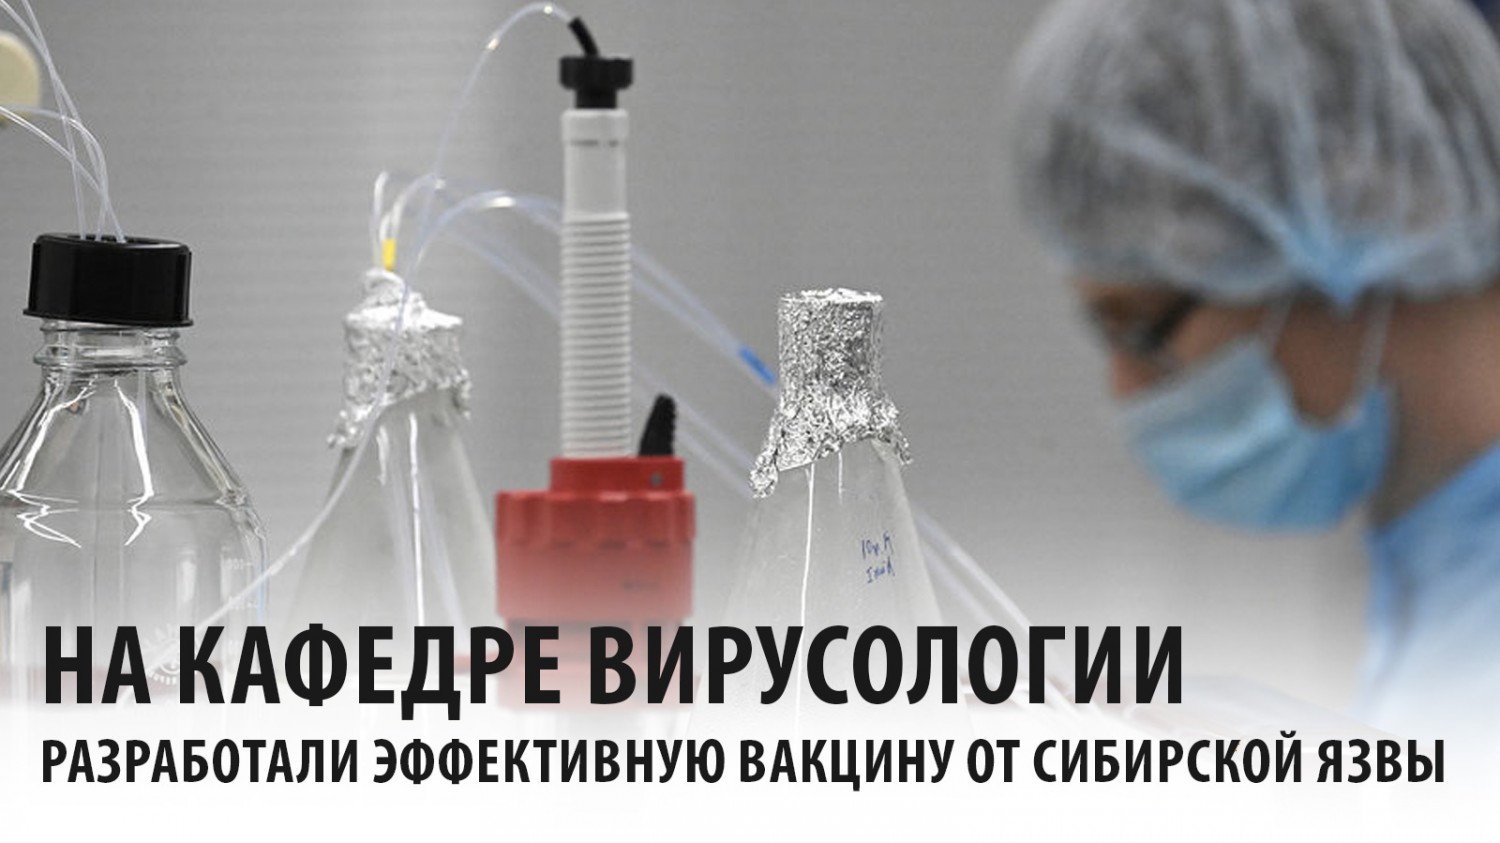 Ученые МГУ создали вакцину от сибирской язвы